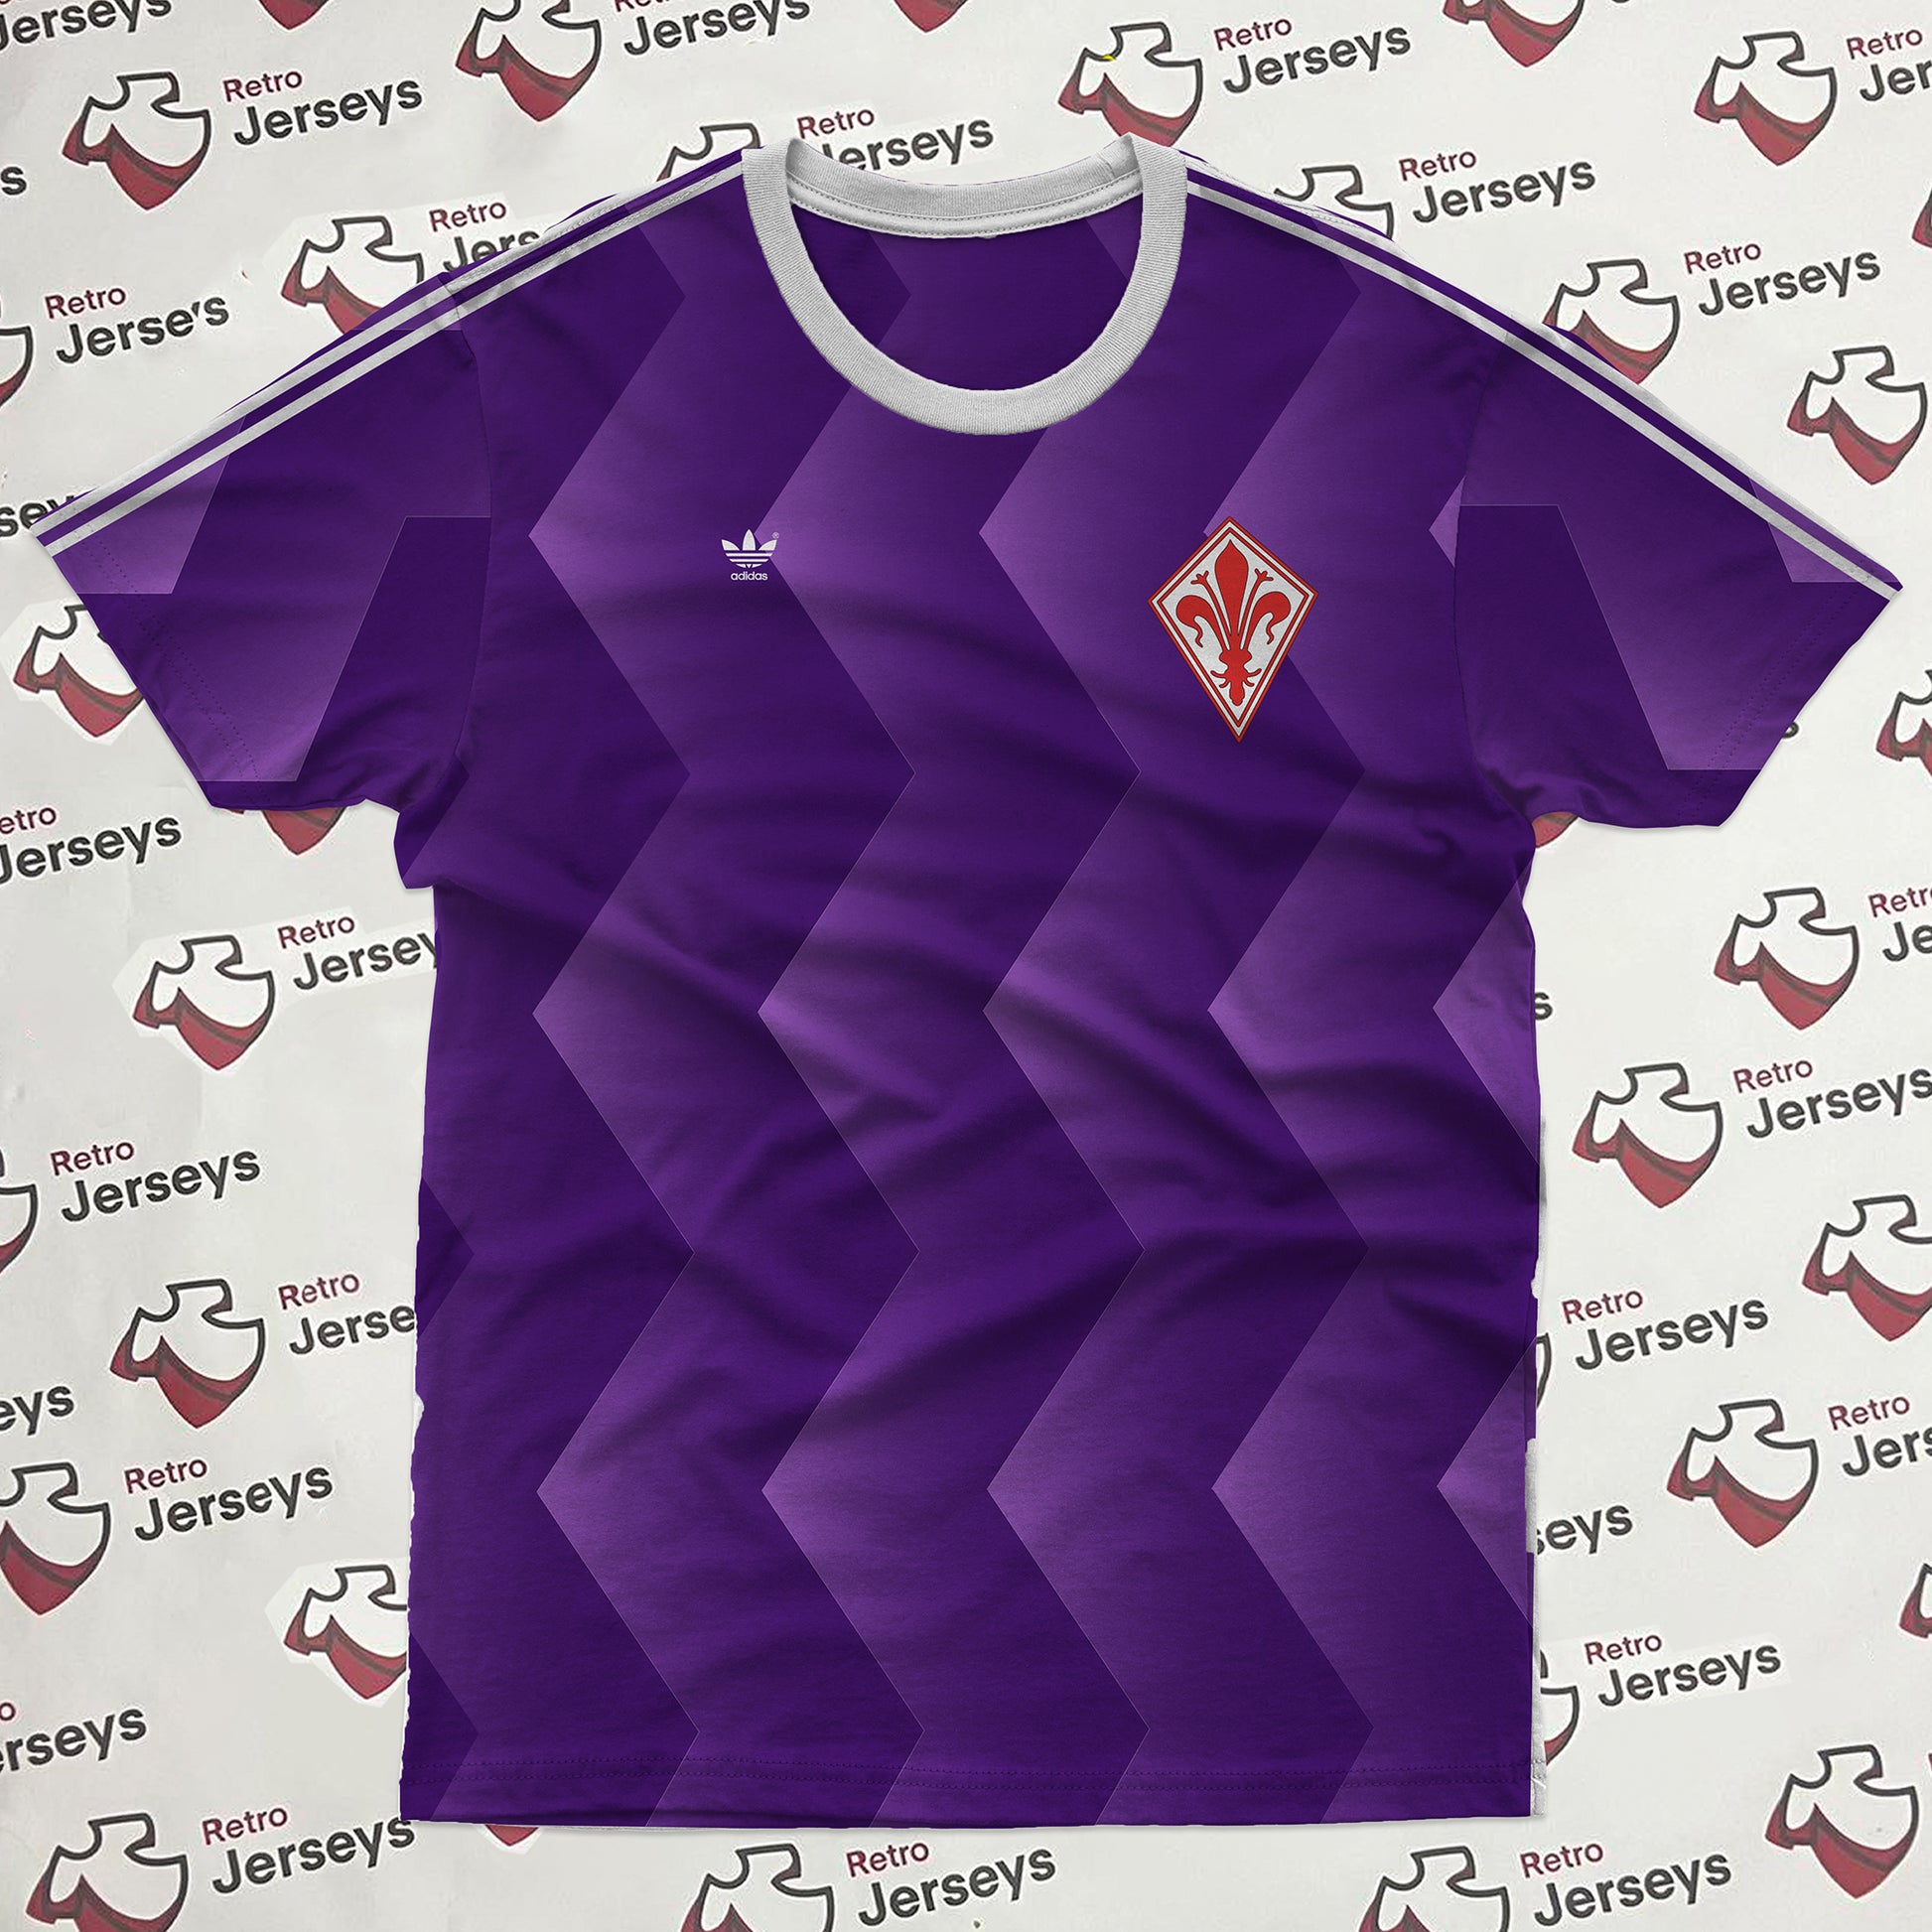 AC Fiorentina Shirt 1981-1982 Home - Retro Jerseys, Maglia Fiorentina - Retro Jerseys